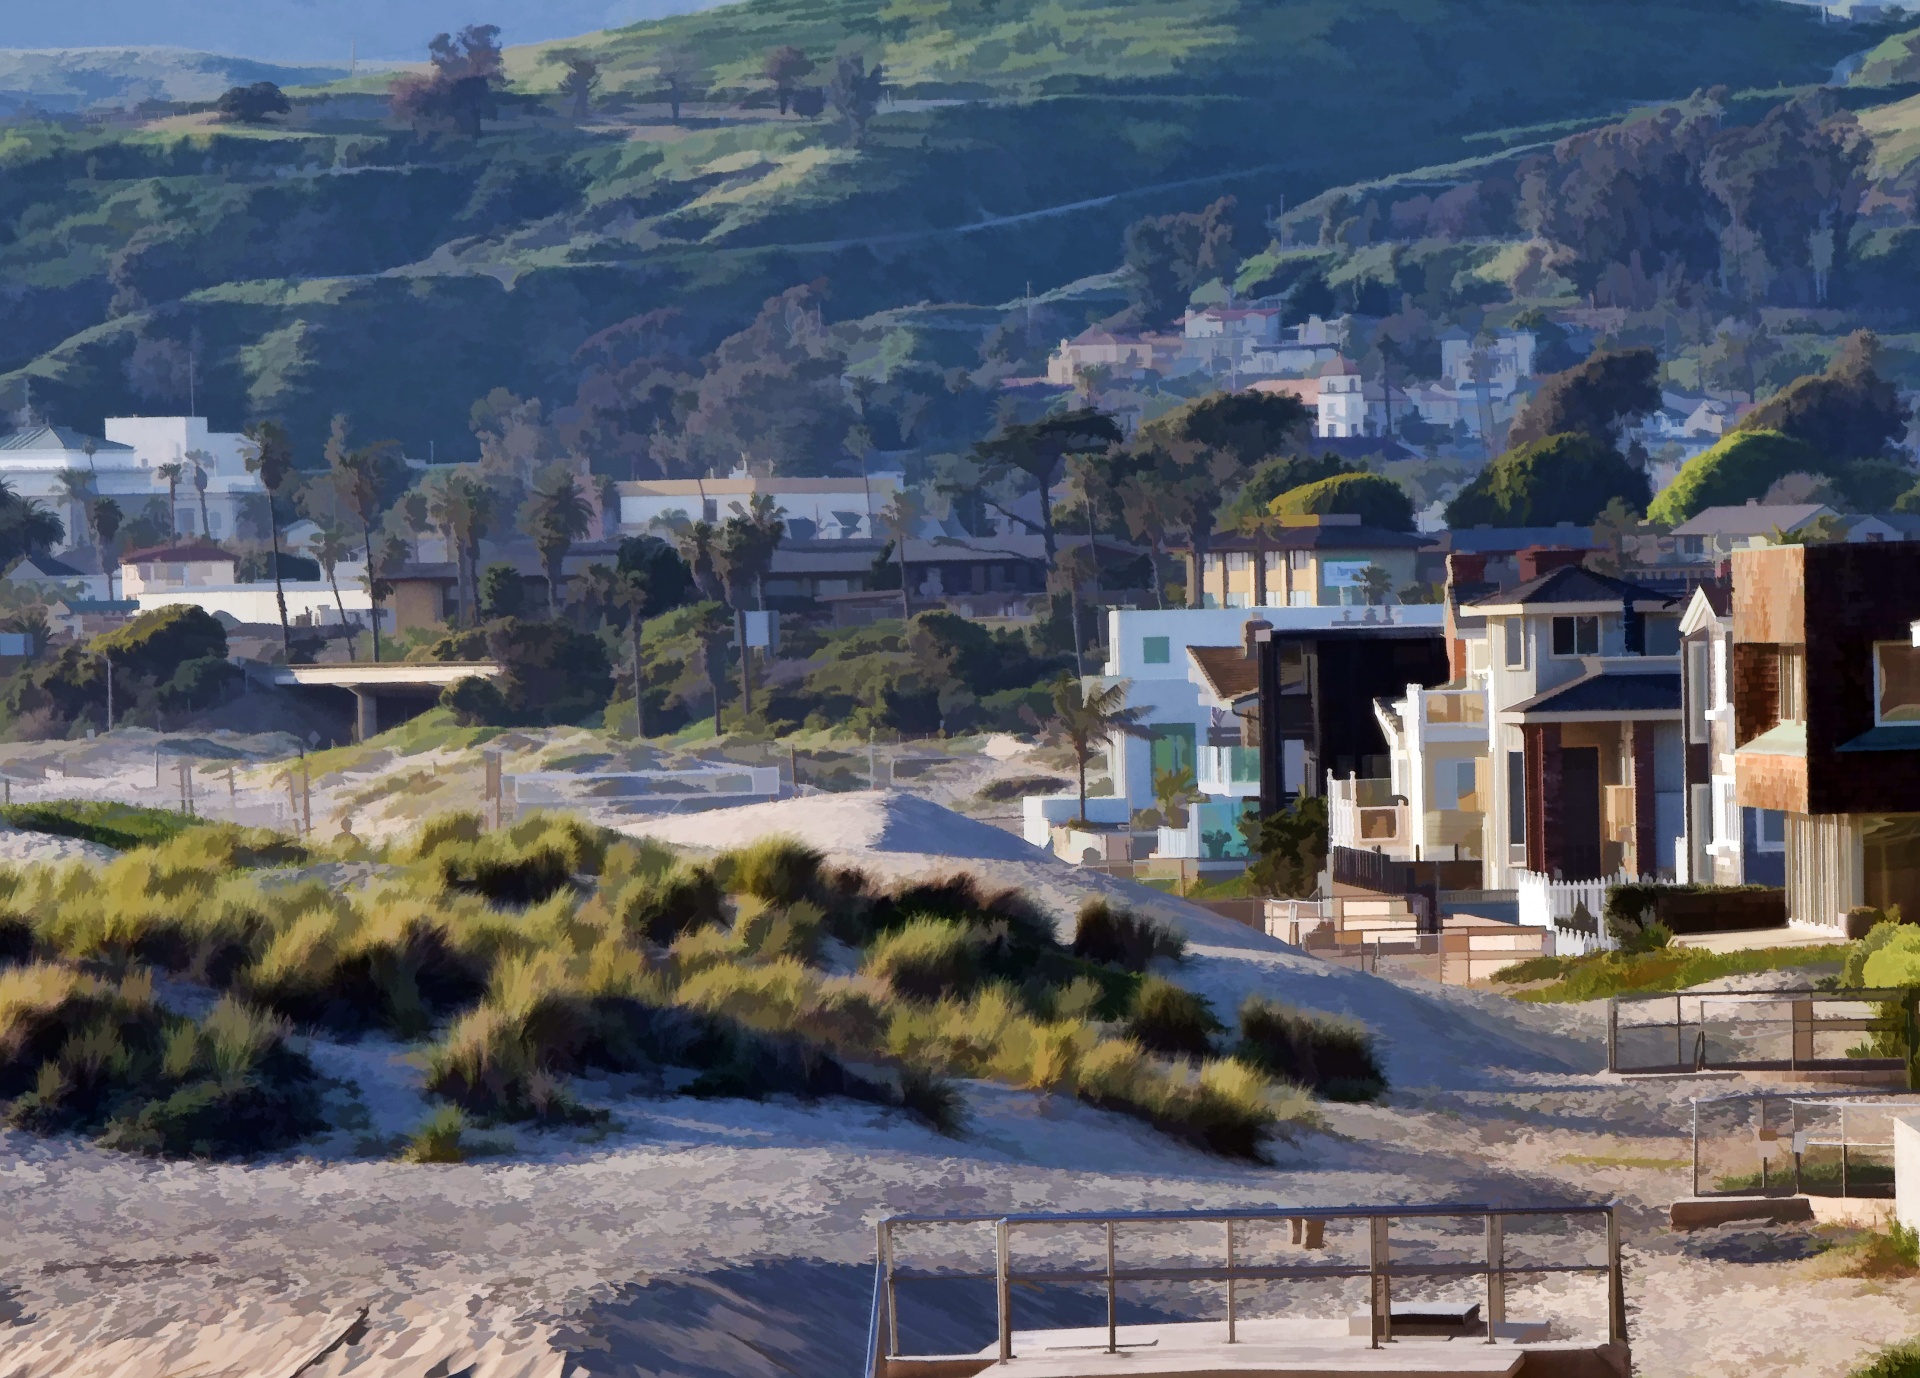 Residences along the Ventura Beach Shore, California